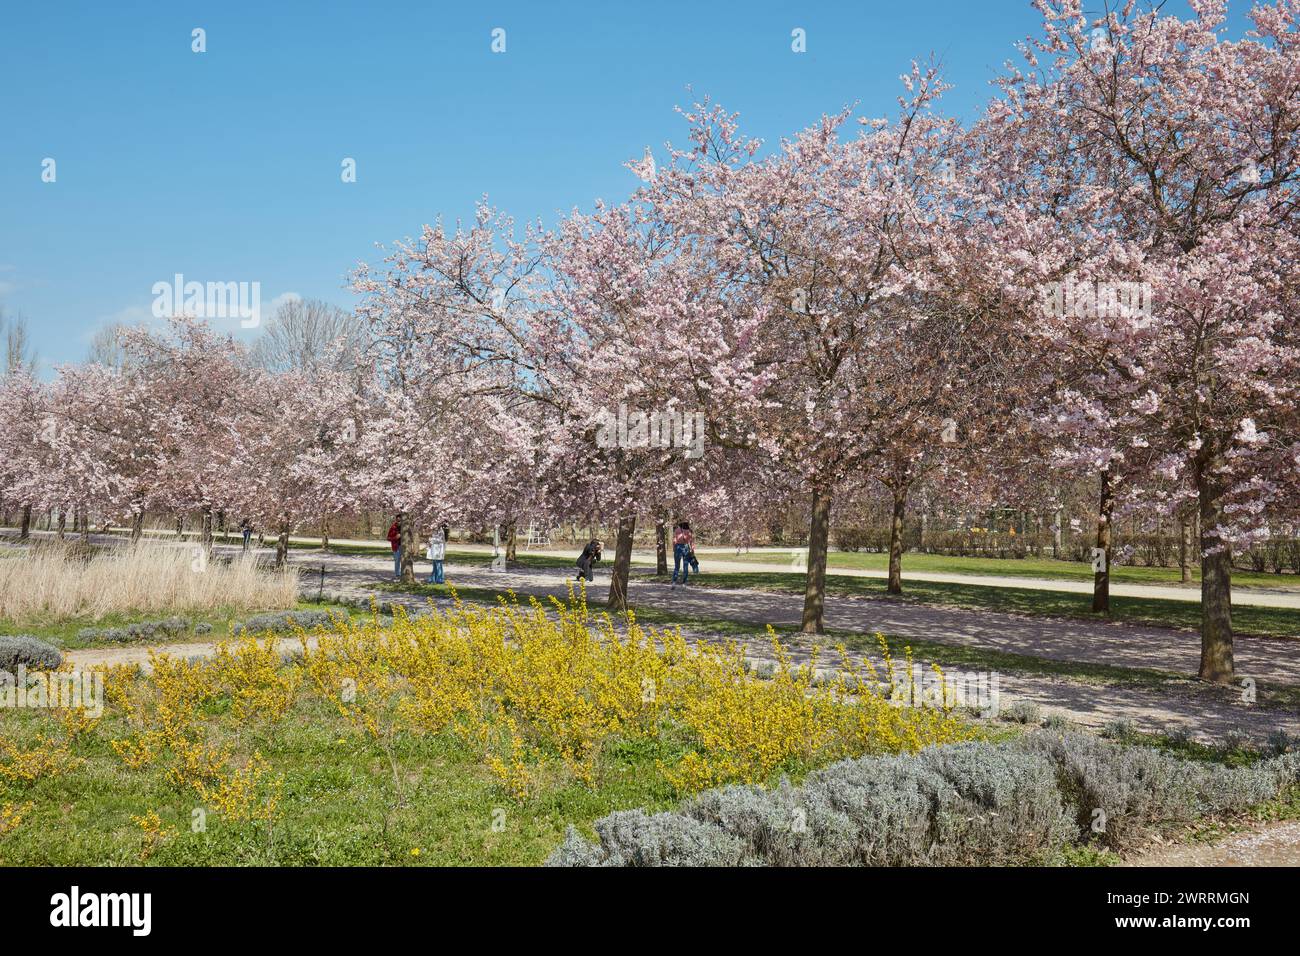 VENARIA REALE, ITALIEN - 29. MÄRZ 2023: Kirschblüte mit rosafarbenen Blüten und Menschen im Park Reggia di Venaria bei Frühlingssonne Stockfoto